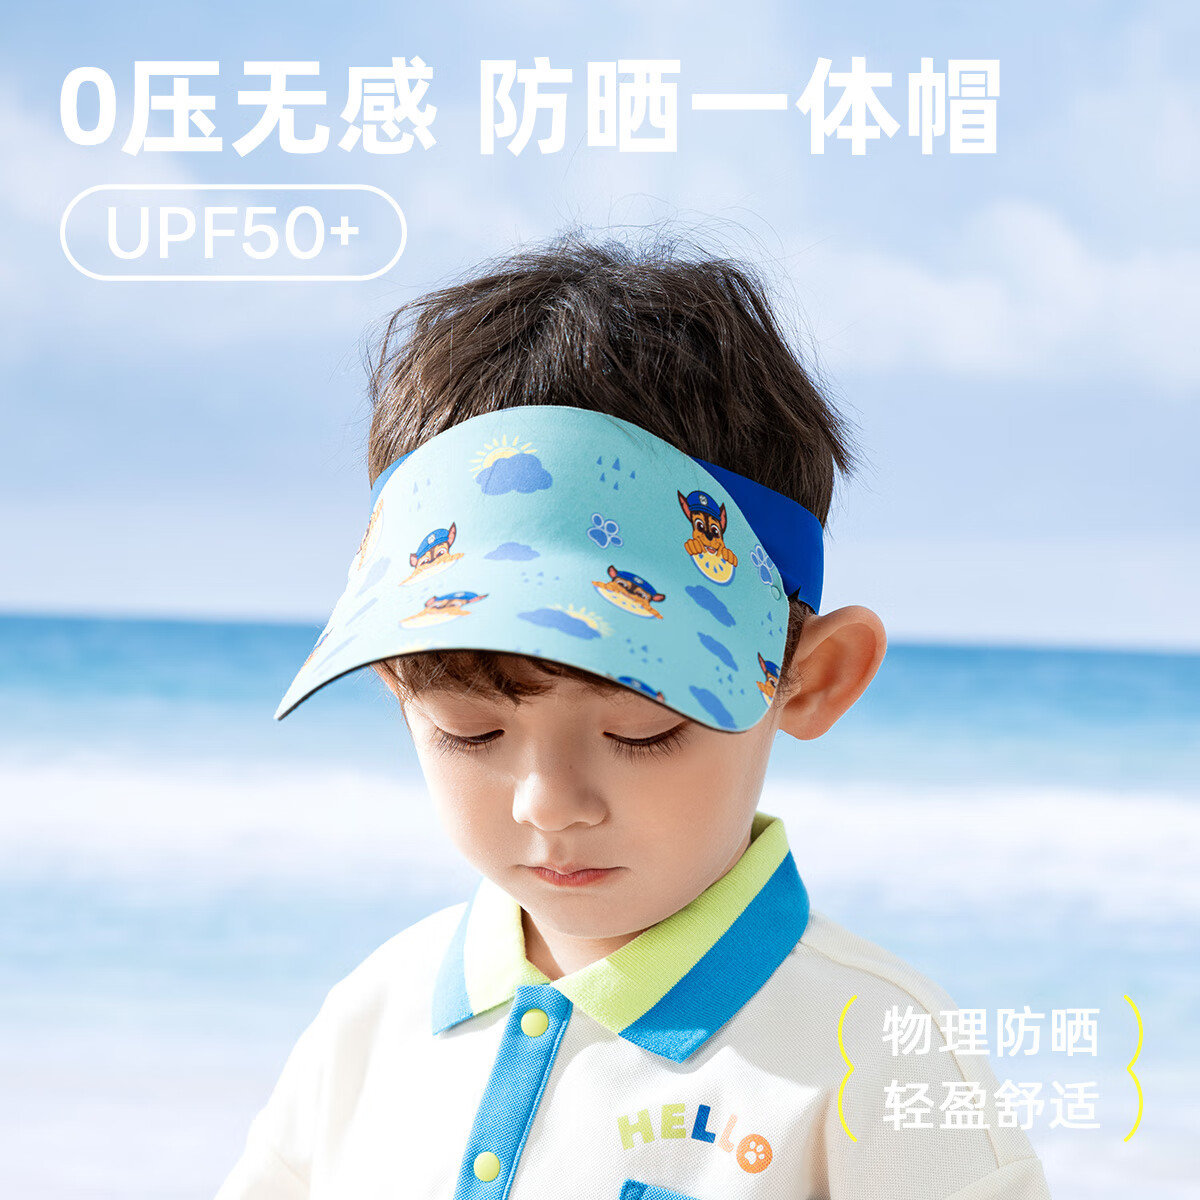 汪汪队立大功 儿童空顶遮阳帽 UPF50+ 52-58cm（2-8岁） 19.9元包邮（双重优惠）